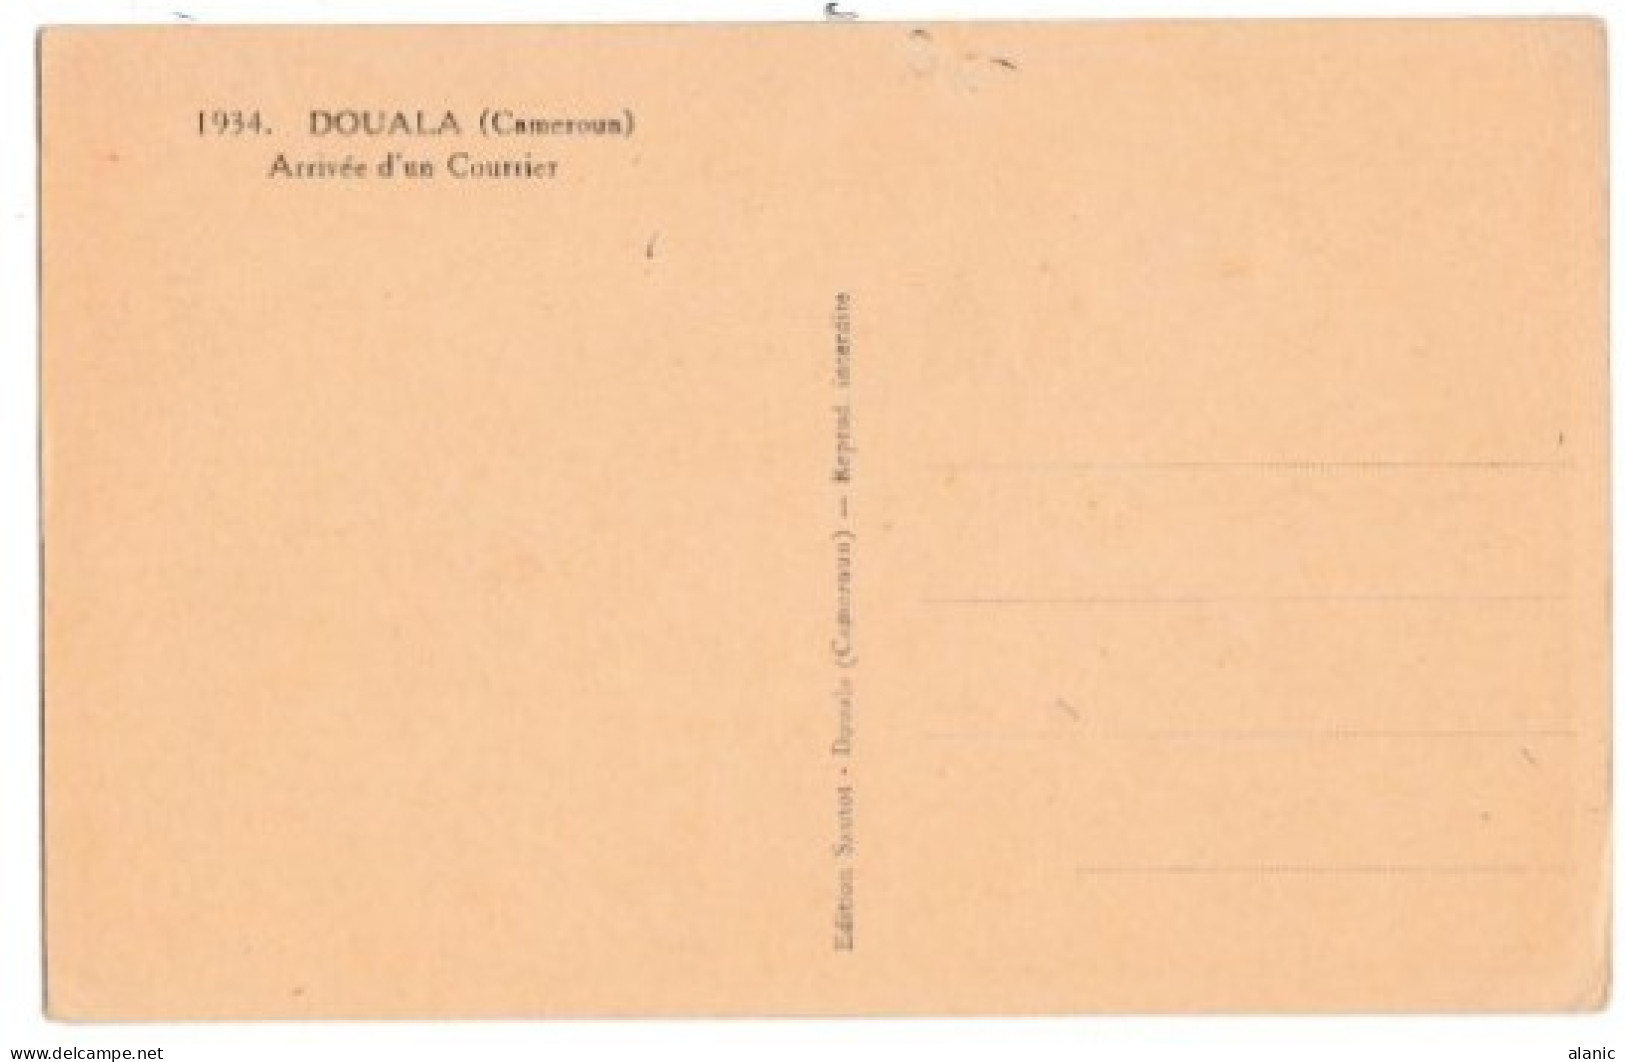 CAMEROUN - DOUALA - Arrivée D'un Courrier - Edit. Sautot N° 1934 - Cameroun